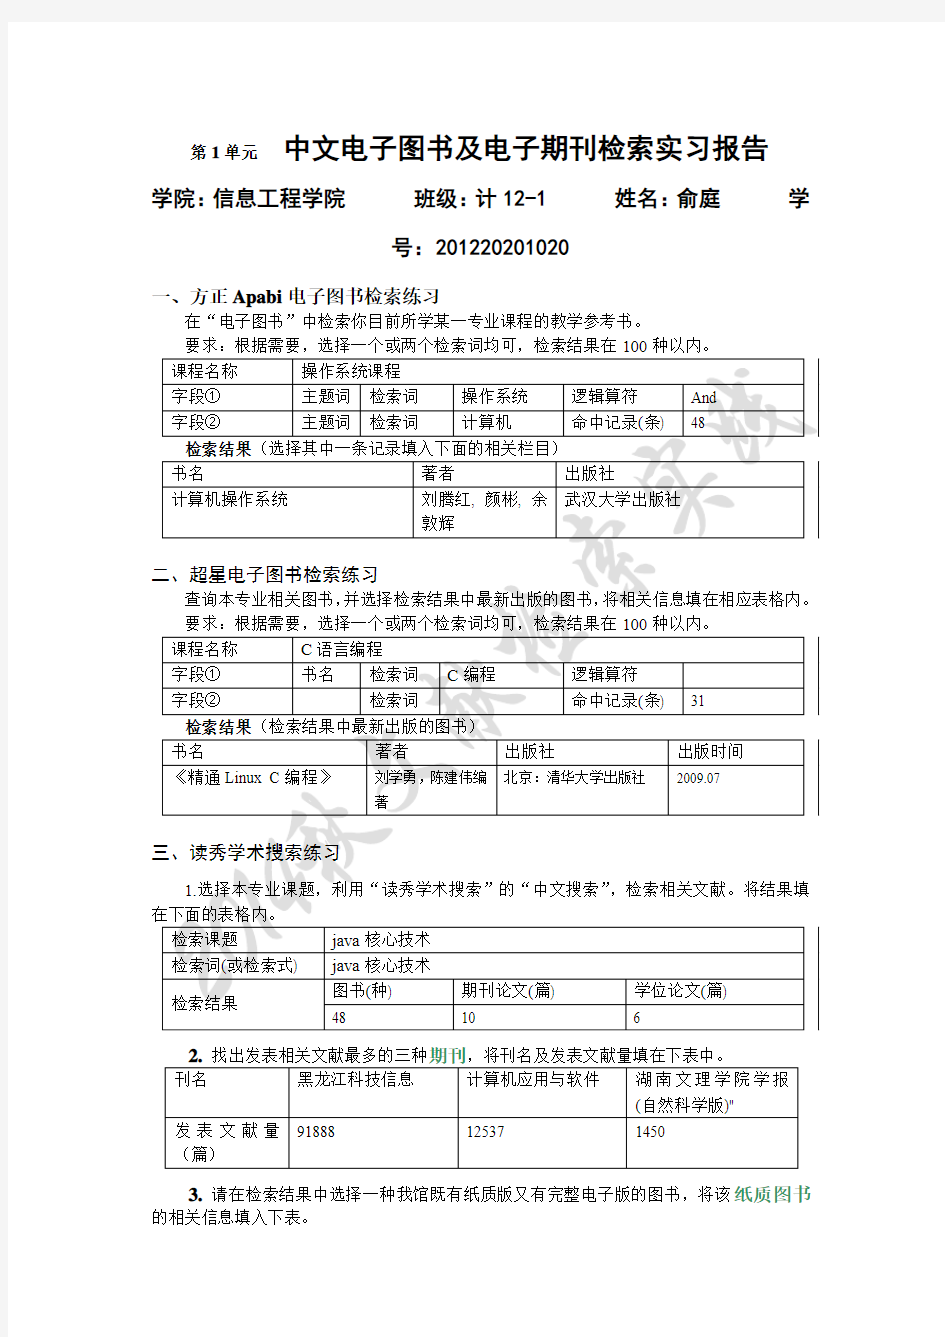 内蒙古工业大学文献检索第1单元 中文电子图书及电子期刊检索实习报告